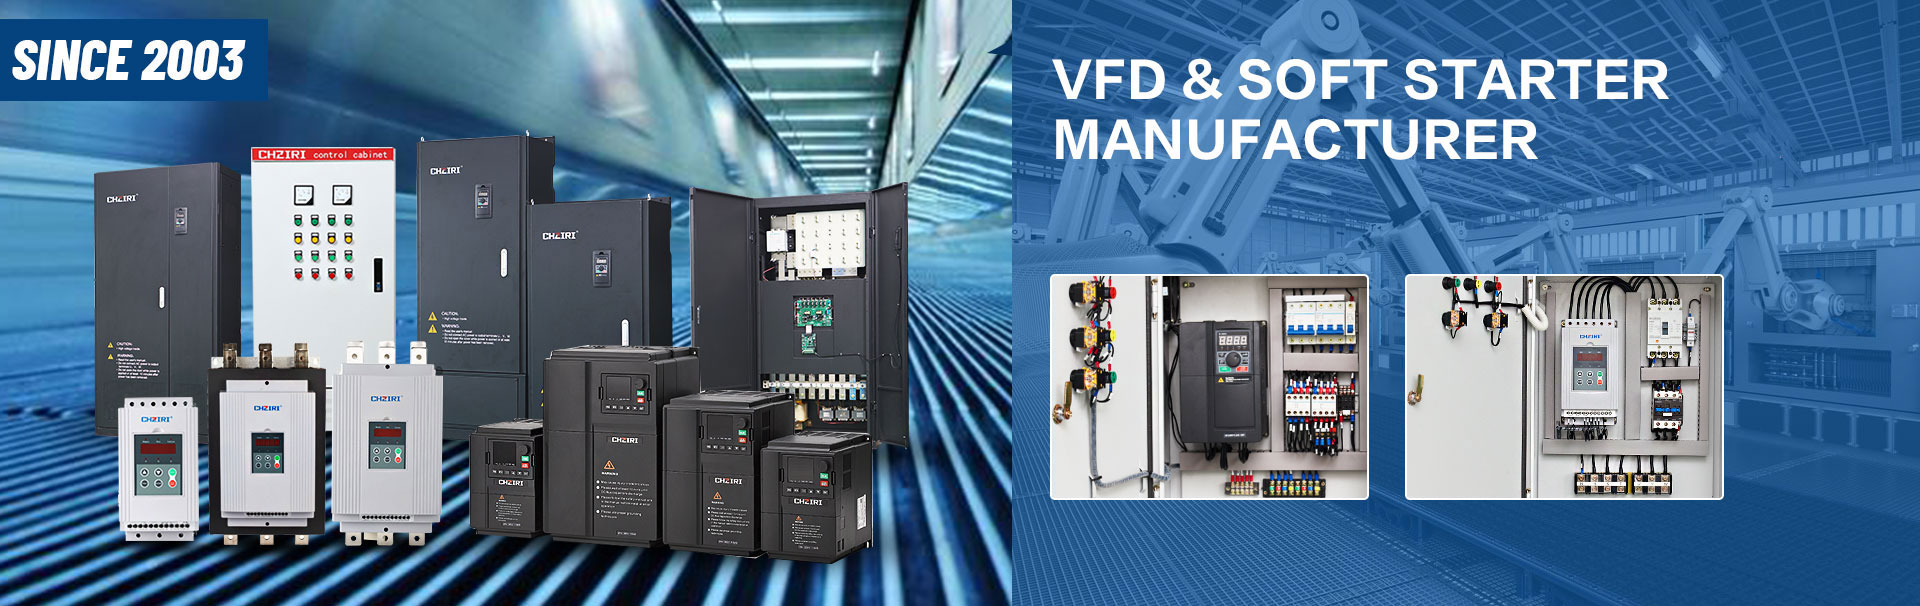 VFD and Soft Starter Manufacturer